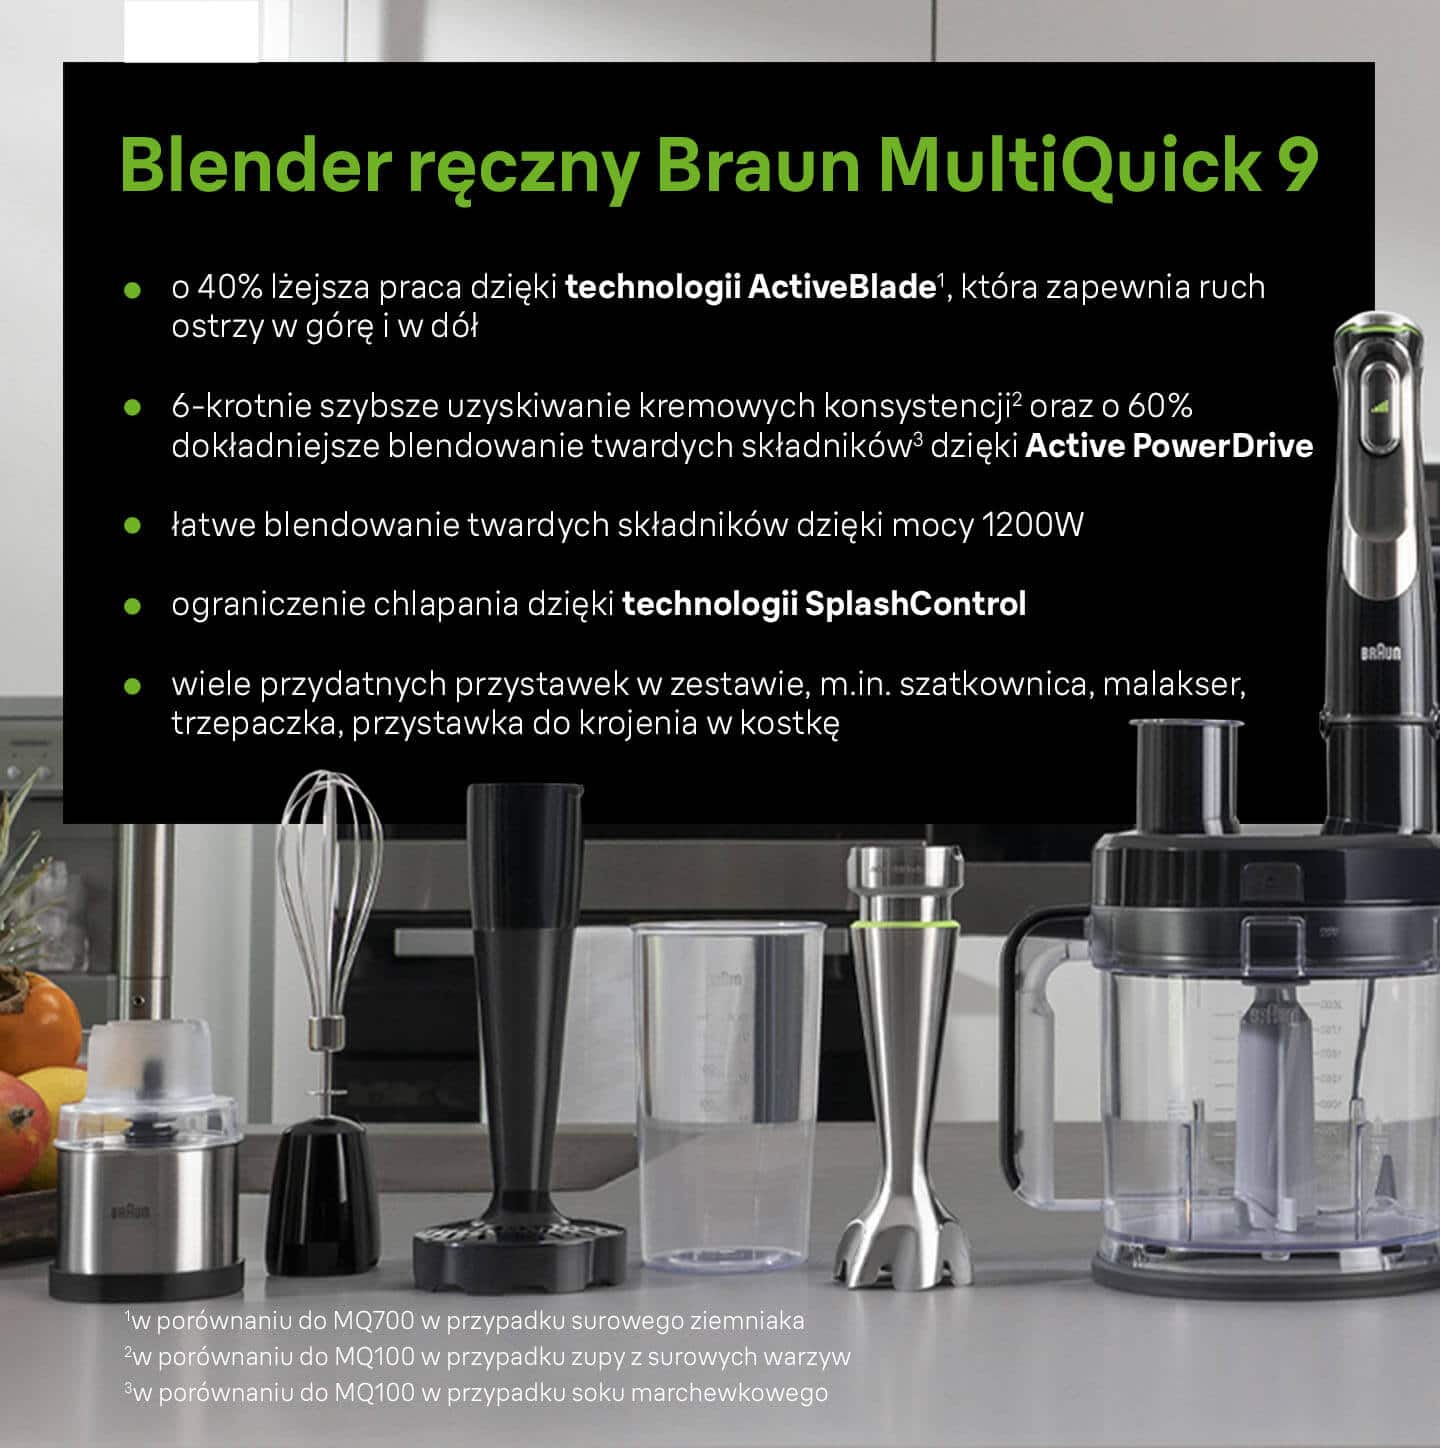 Blender ręczny Braun MultiQuick 9: technologia Active Blade, Active PowerDrive i technologia SplashControl, wiele przydatnych przystawek w zestawie - infografika